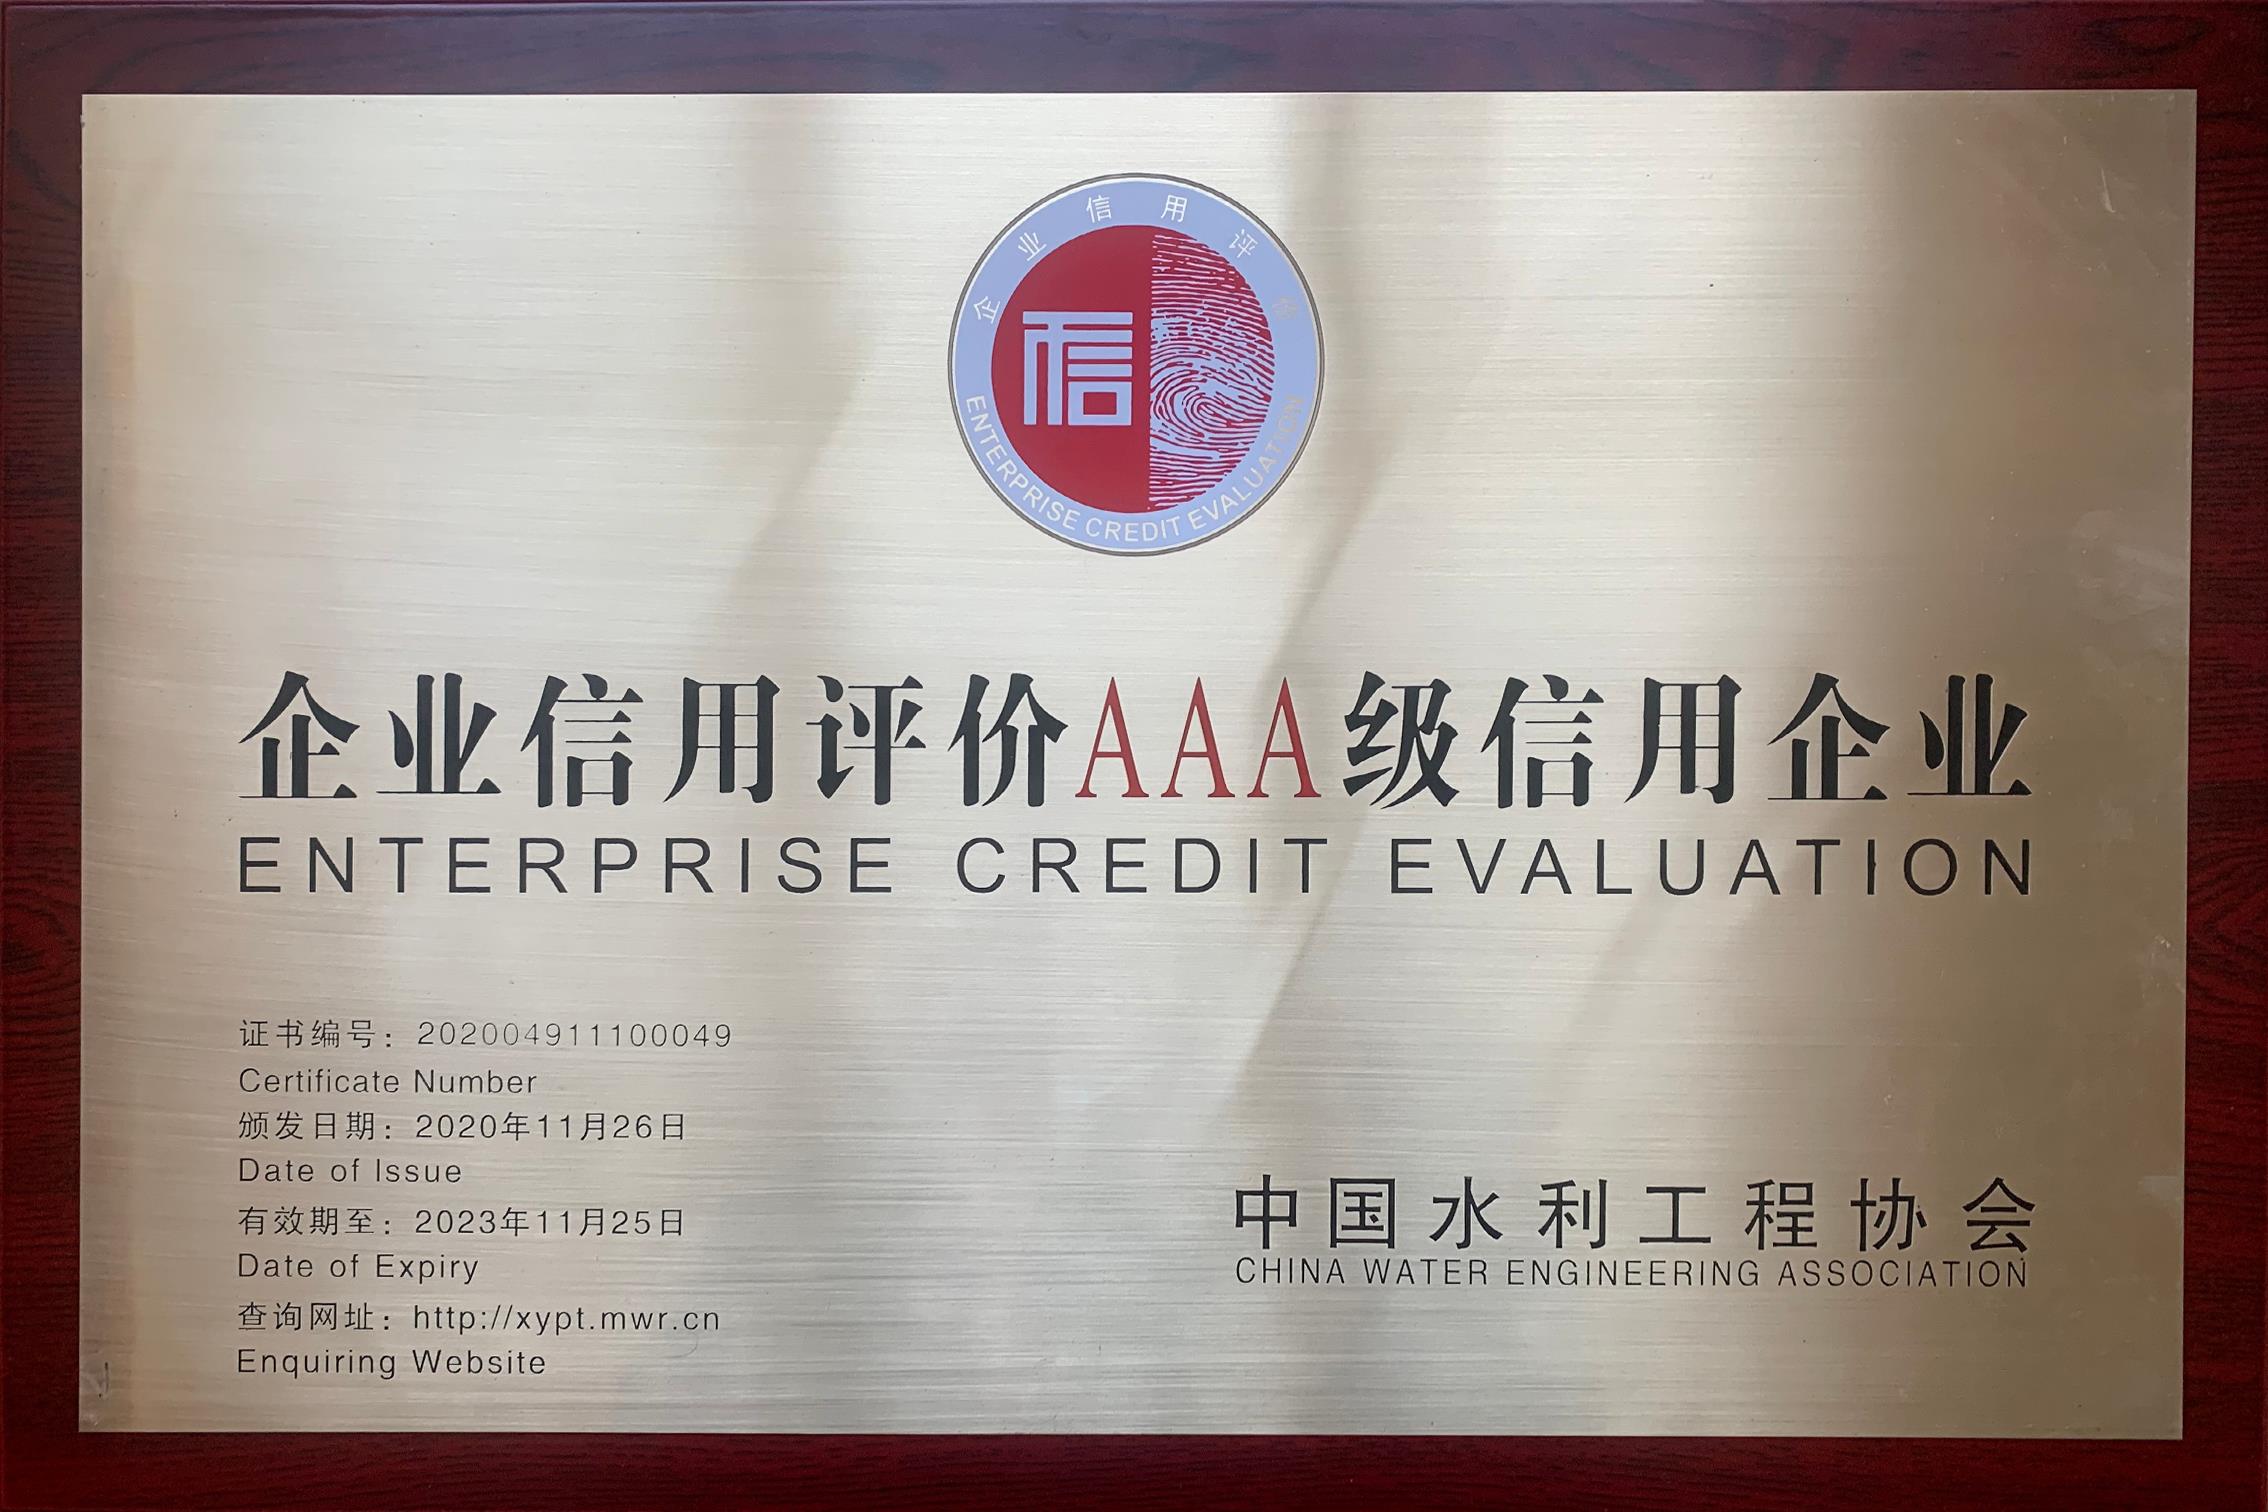 企业信用评价AAA级信用企业（中国水利工程协会）.jpg